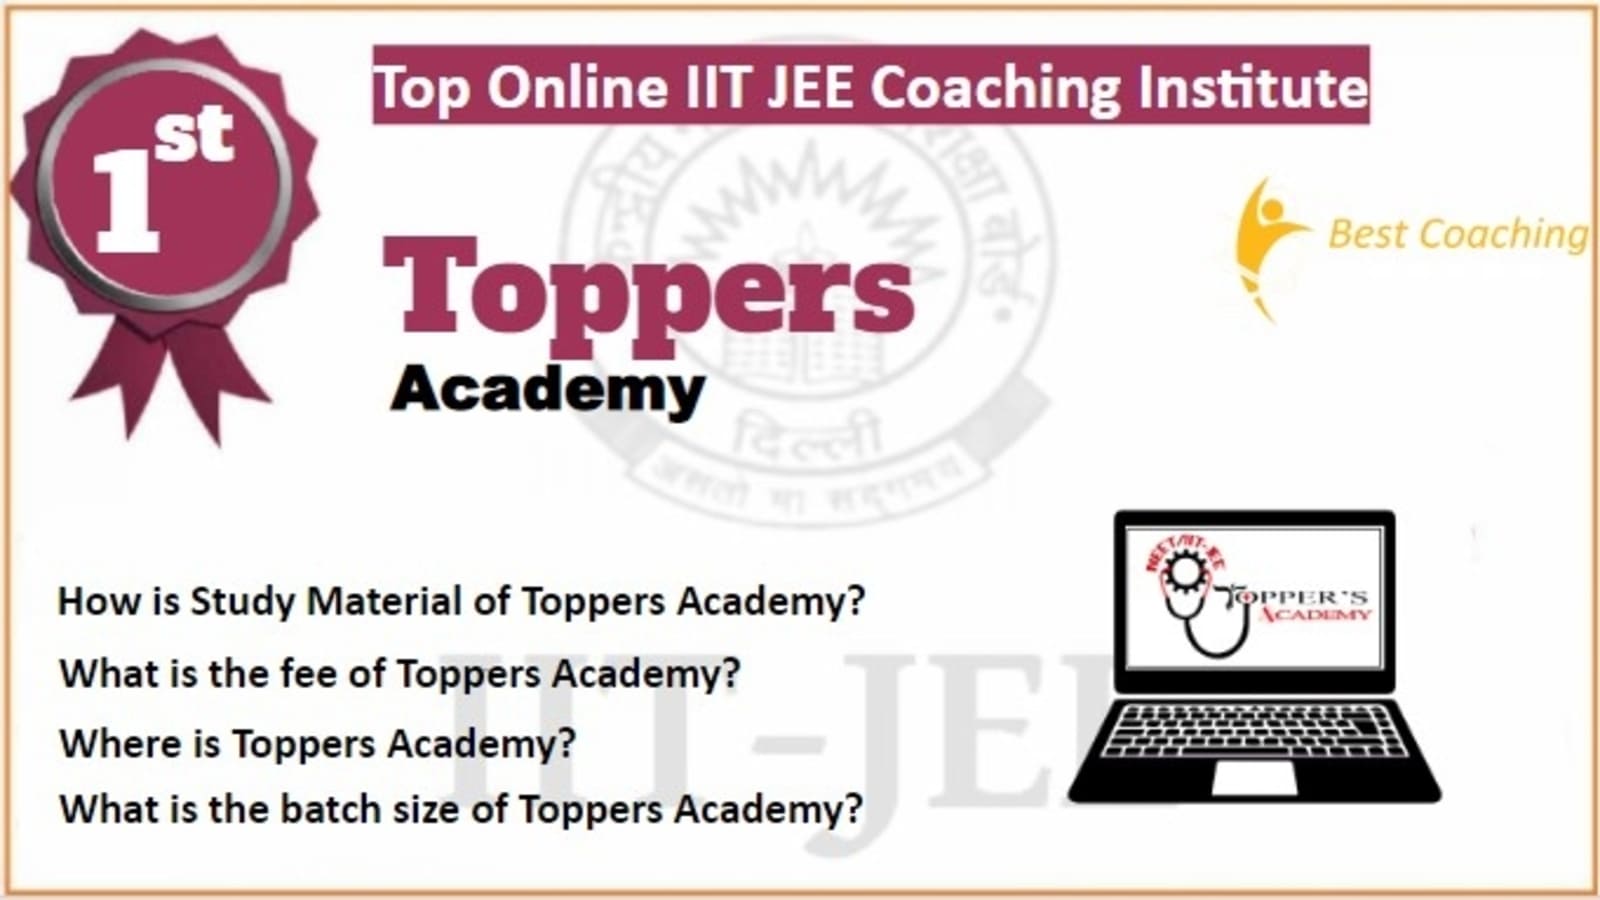 Rank 1 Best Online IIT JEE Coaching